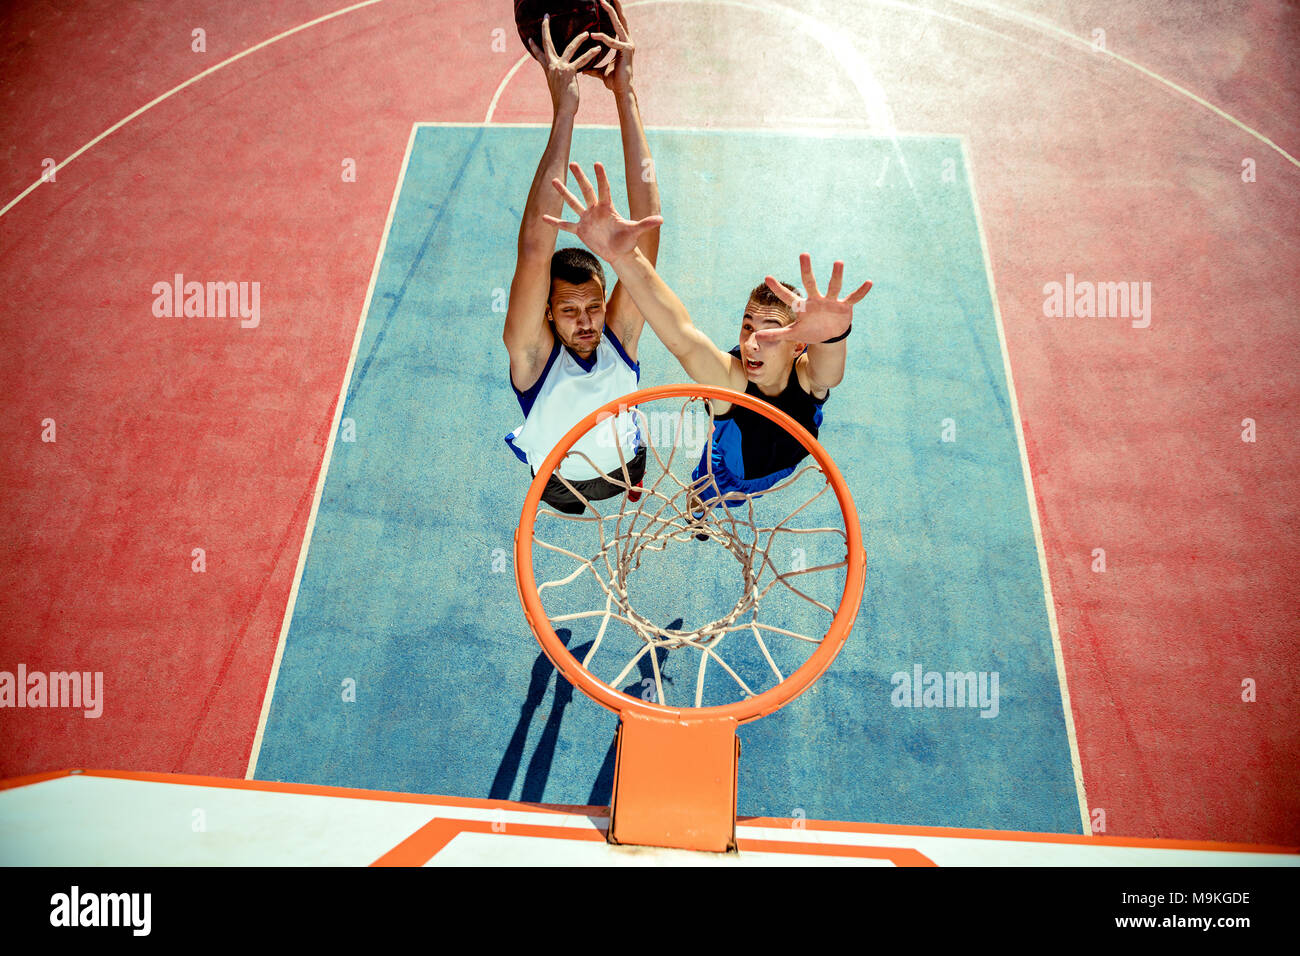 Un alto ángulo de visualización del jugador de baloncesto, mojando en el aro de baloncesto Foto de stock